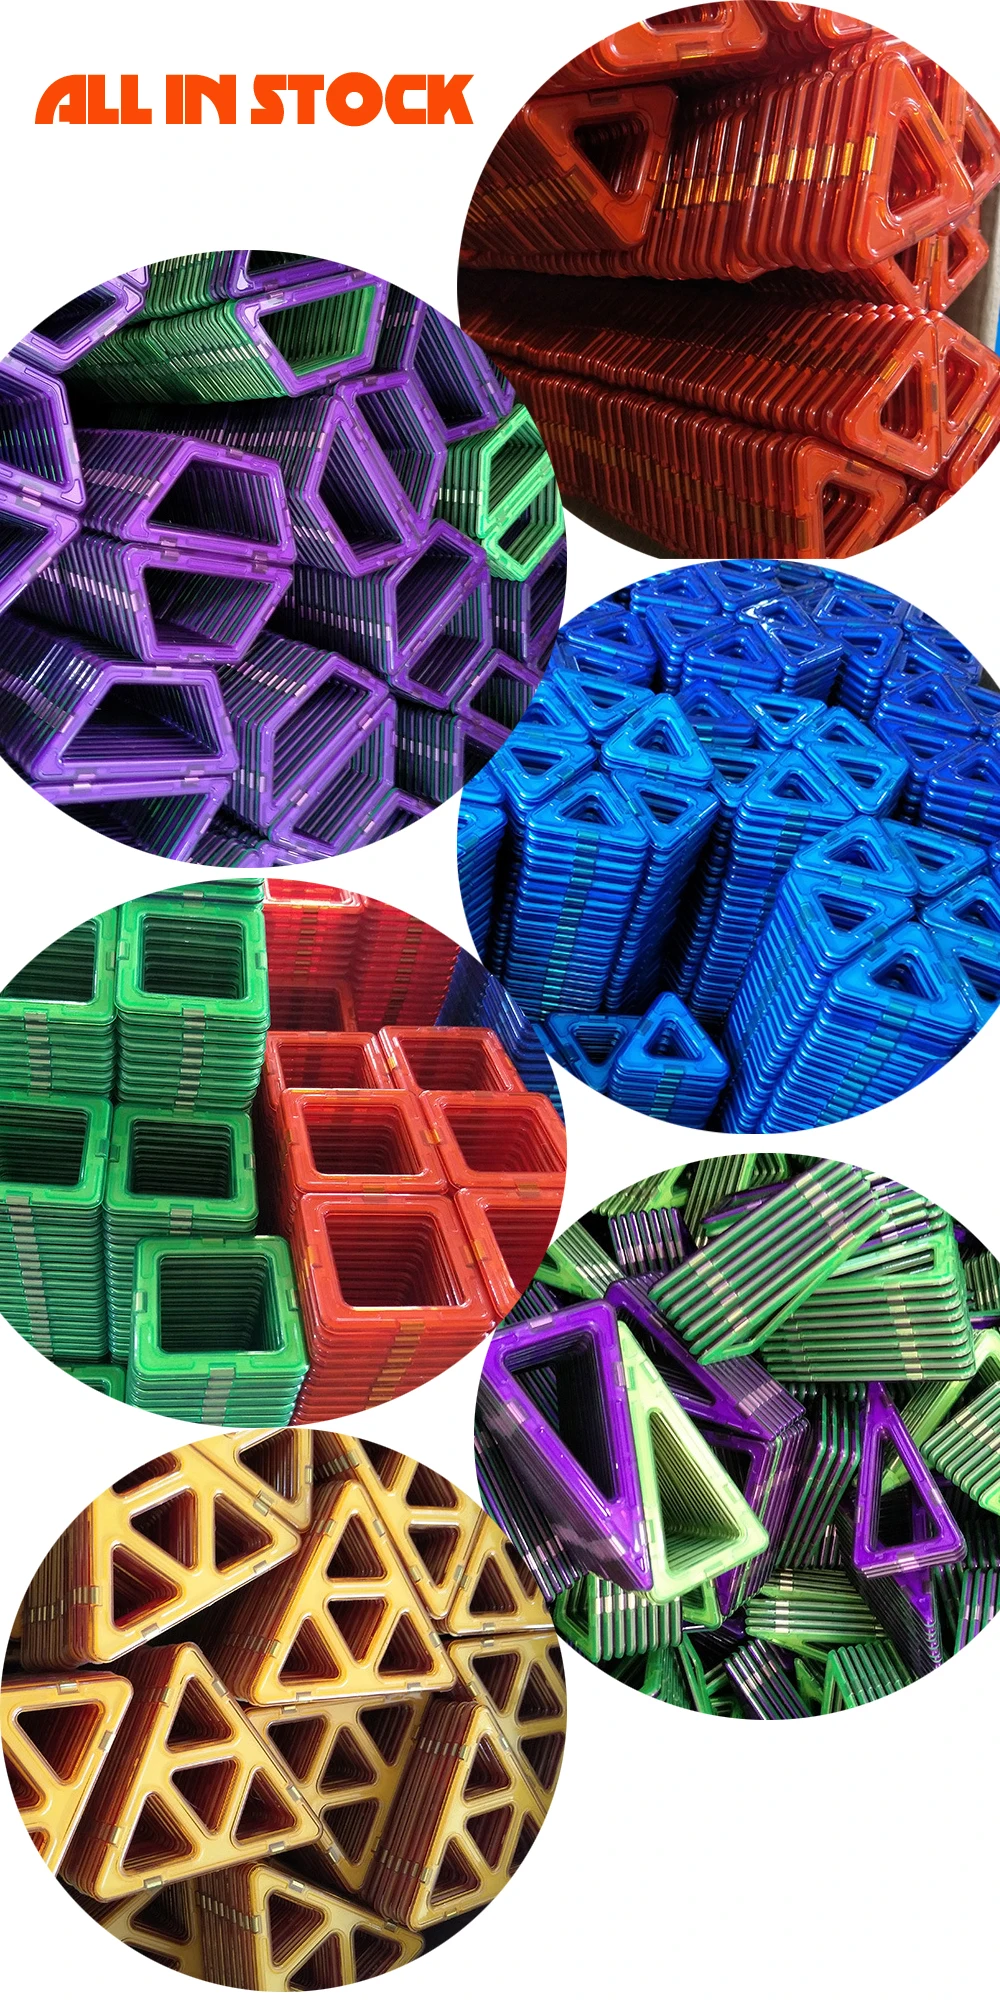 3D Магнитный конструктор Сделай Сам моделирование строительные блоки один Кирпич аксессуар Магнитная игрушка Развивающие игрушки для детей подарок